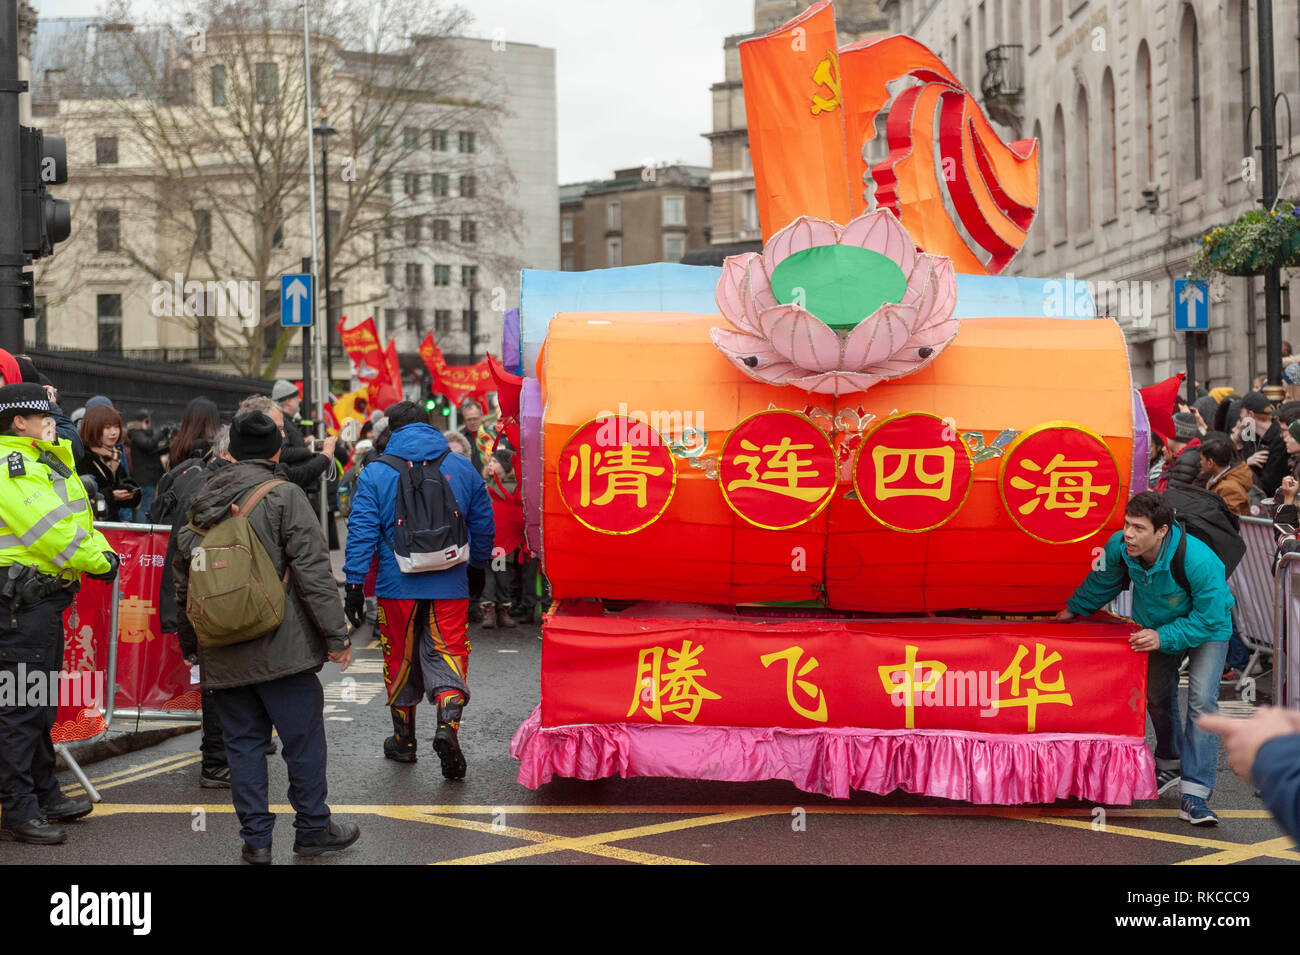 Londres, Reino Unido. 10 Feb, 2019. Enfoque carrozas Trafalgar Square en Londres, Inglaterra, Reino Unido., durante las celebraciones del Año Nuevo Chino. Crédito: Ian Laker/Alamy Live News. Foto de stock